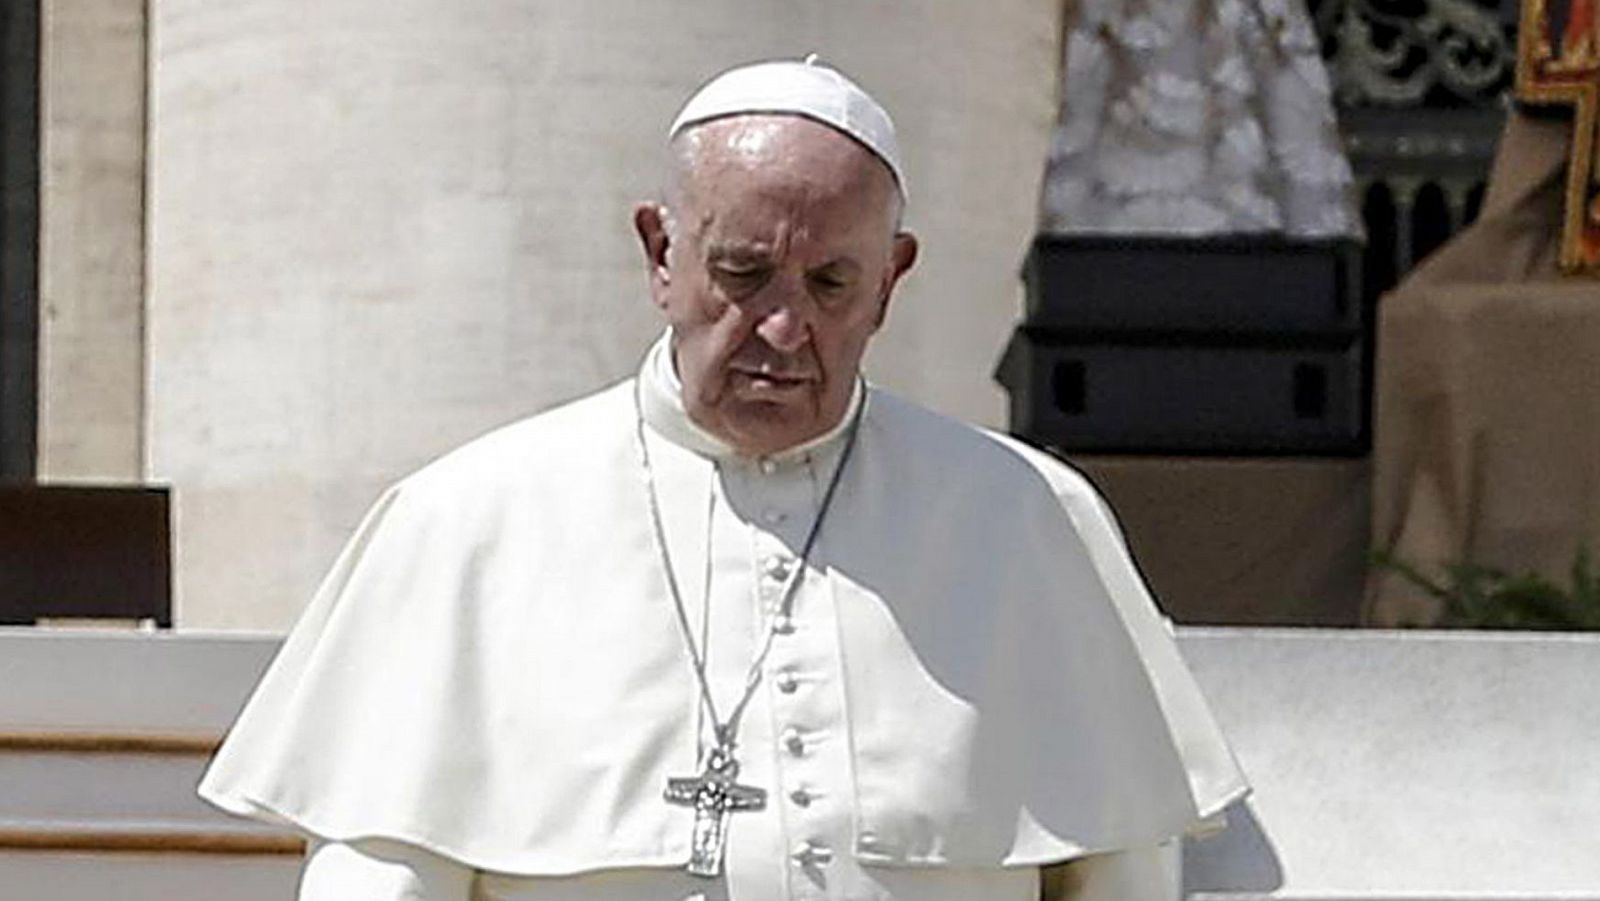 El papa Francisco fotografiado en la plaza de San Pedro, Vaticano (imagen de archivo)